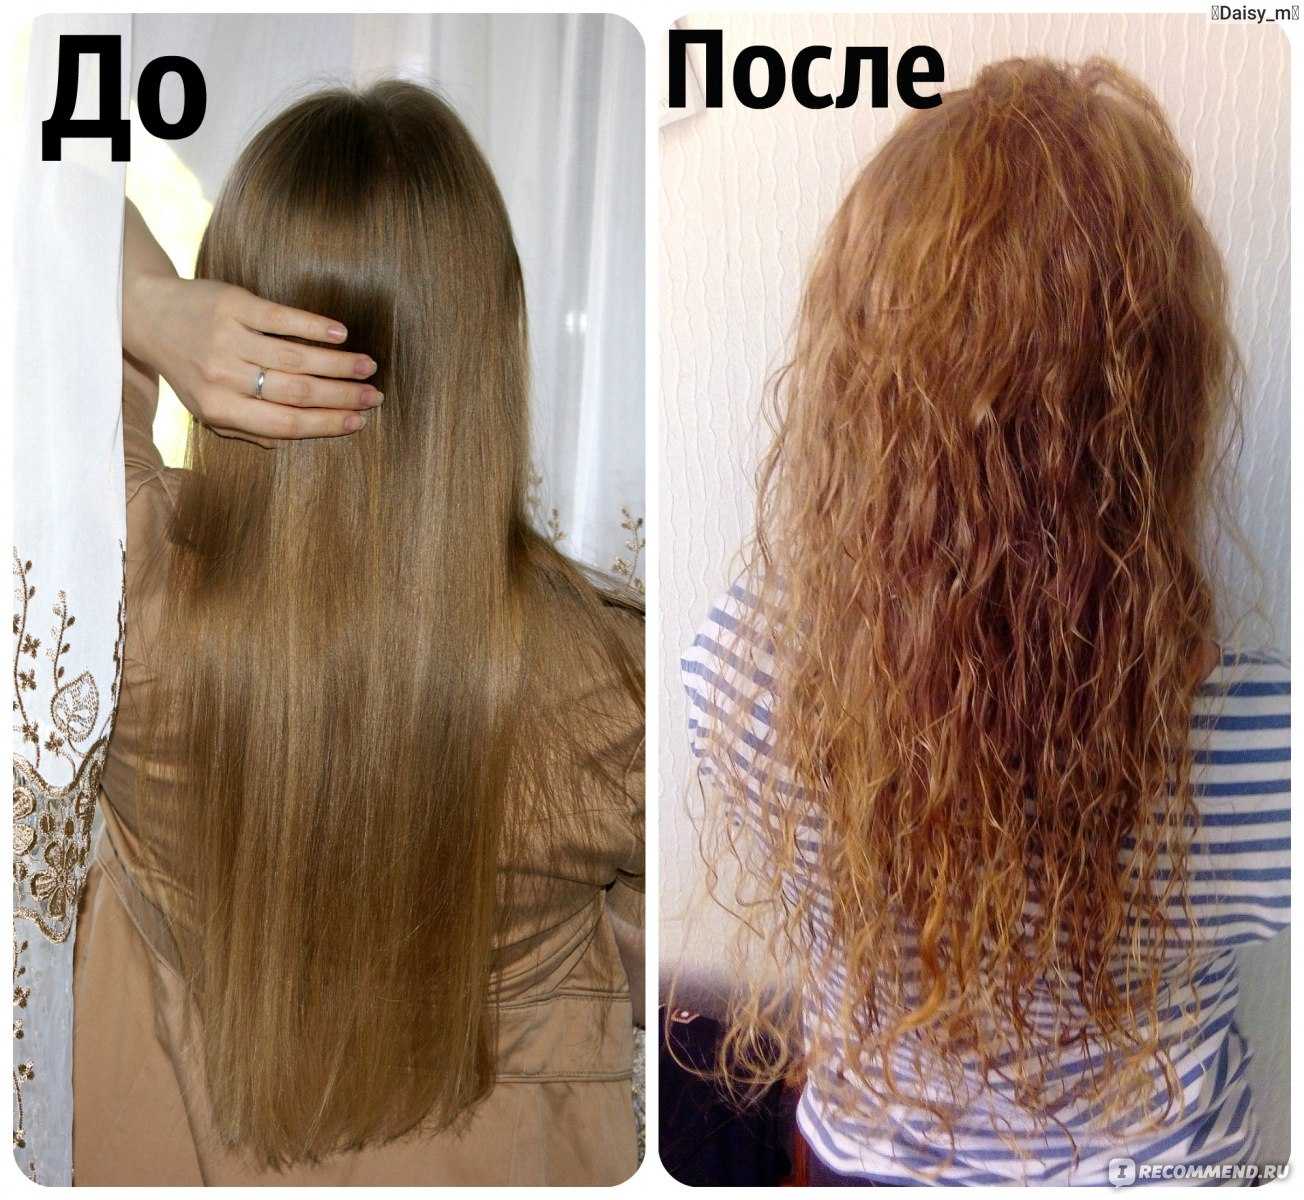 Сильные волосы отзывы. Волосы после биозавивки. Биозавивка волос результат. Биохимия волос до и после. Биозавивка волос до и после.